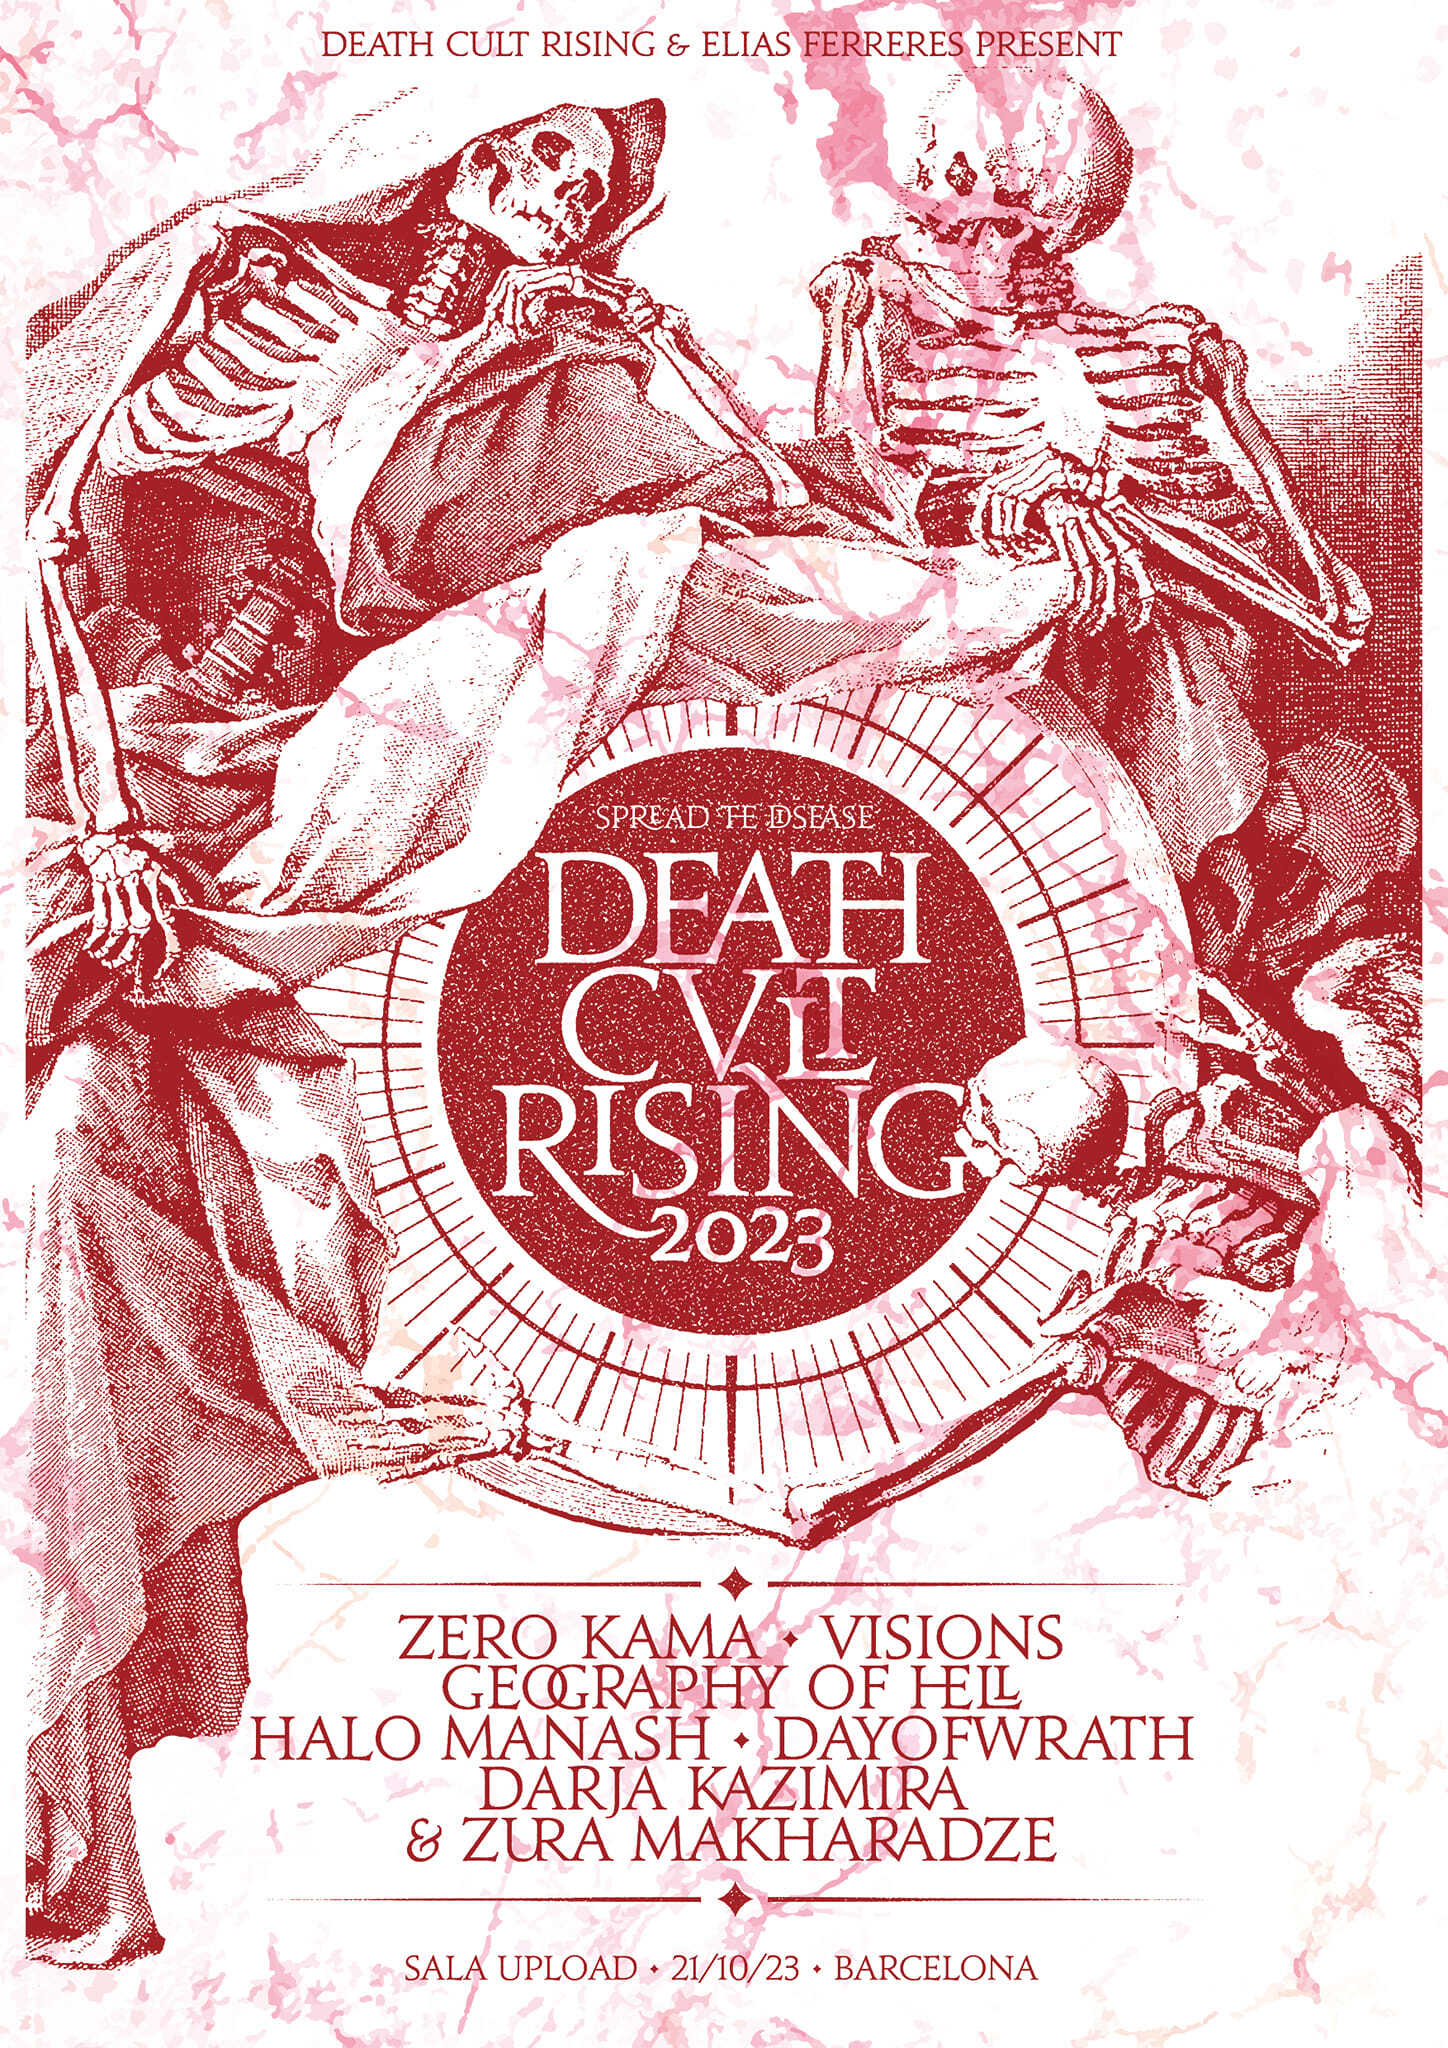 Cartel completo y entradas del Death Cult Rising 2023